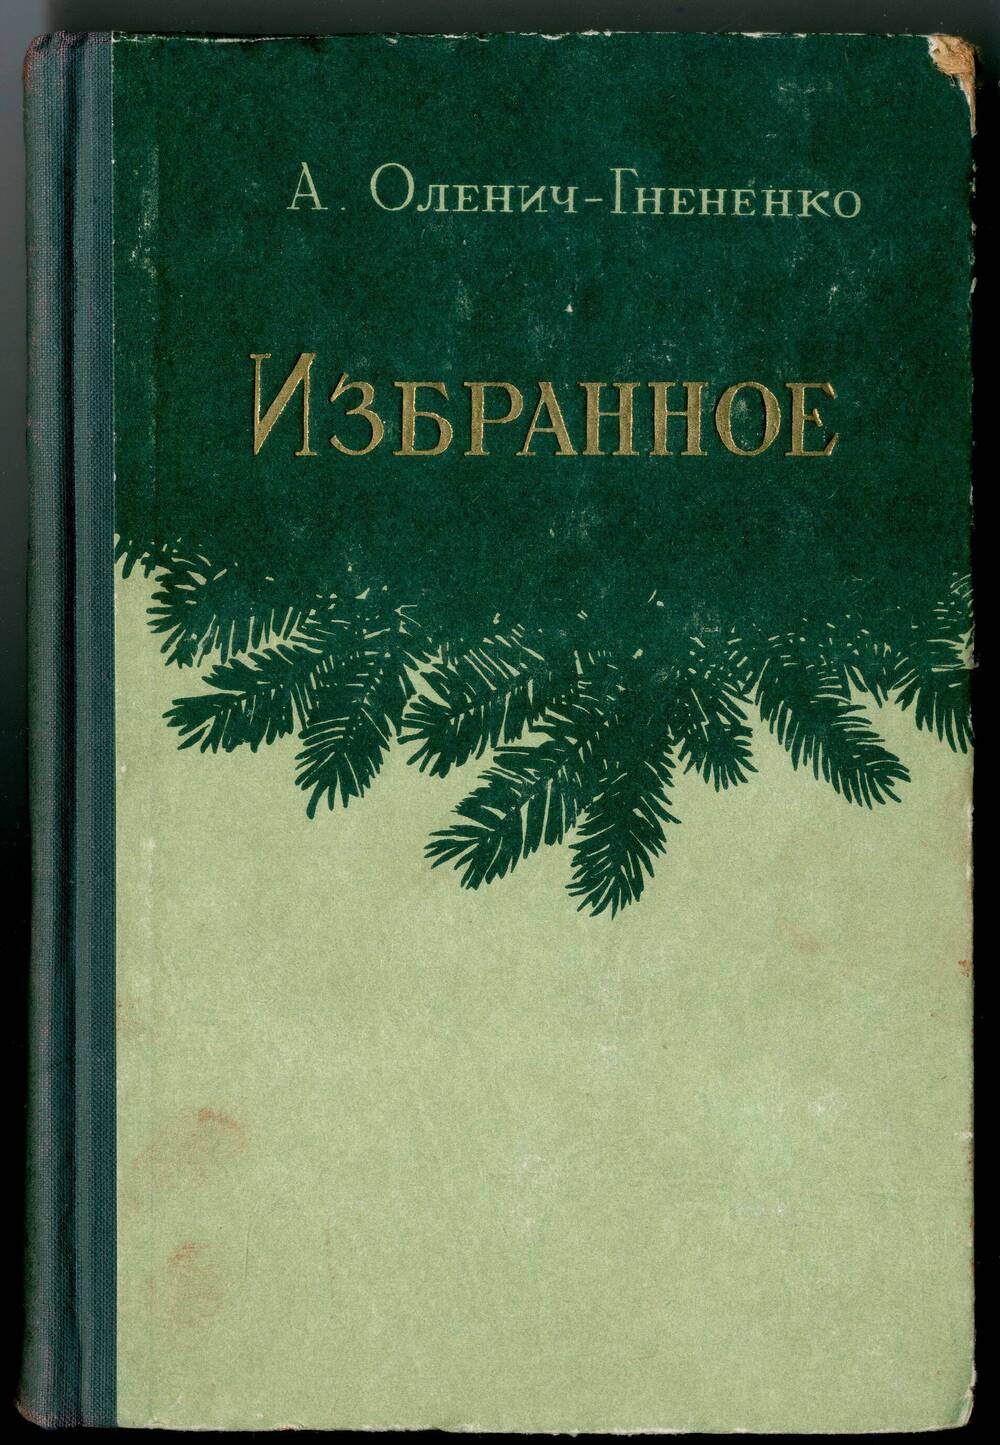 Книга: Оленич-Гнененко А.П. Избранное, Ростов н/Д, 1954.